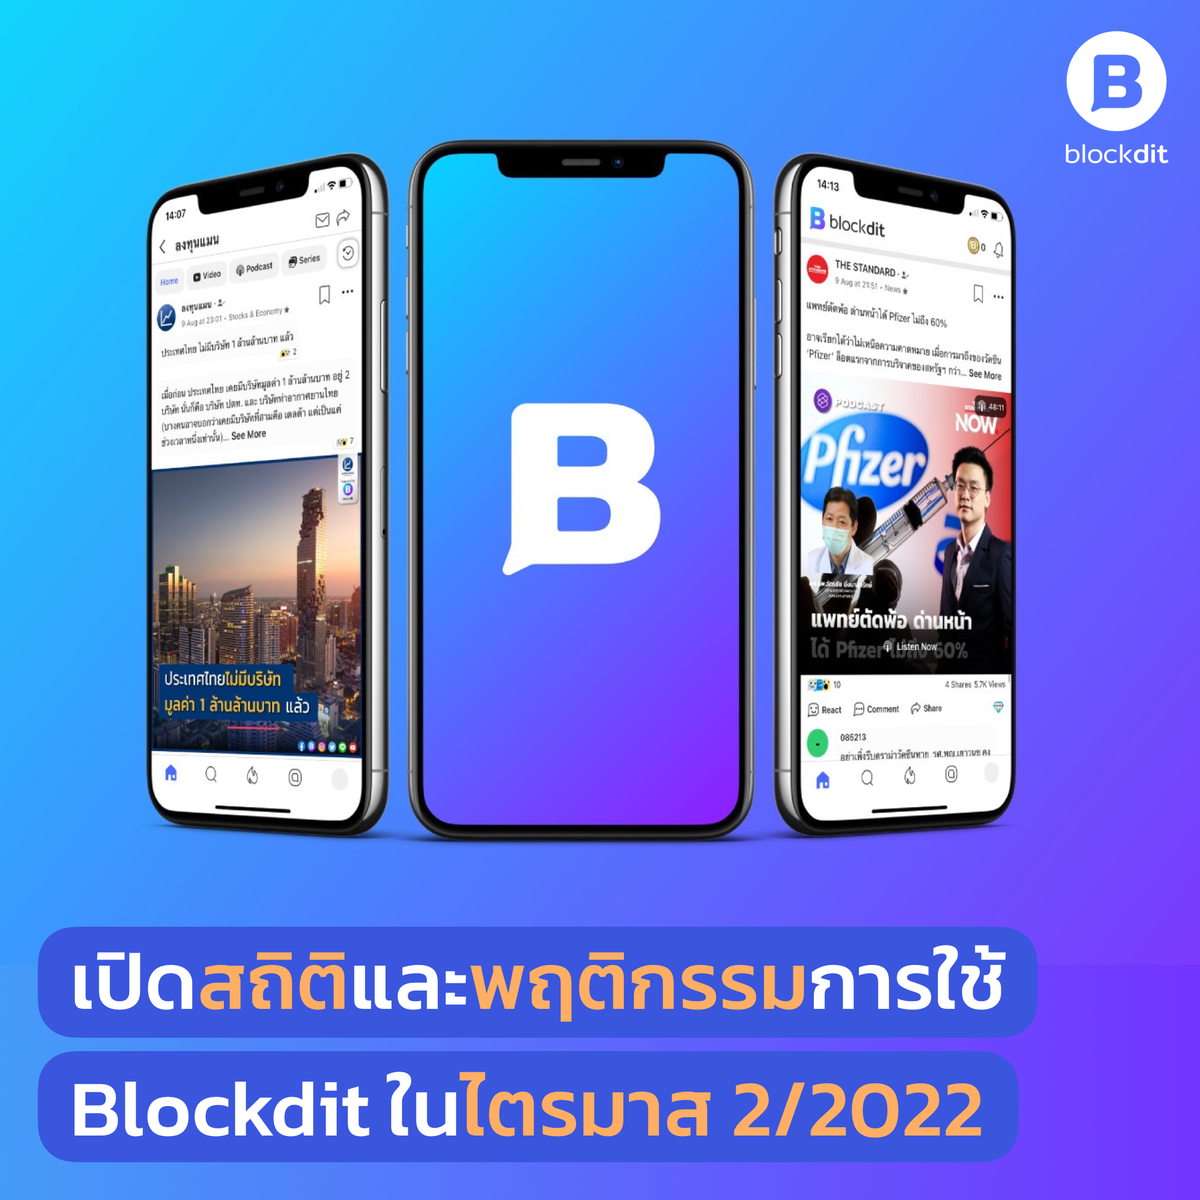 เปิดสถิติและพฤติกรรมการใช้ Blockdit ในไตรมาส 2/2022 คนไทยมองหาแพลตฟอร์มใหม่เพื่อรับมือความเสี่ยงถูกลด Reach